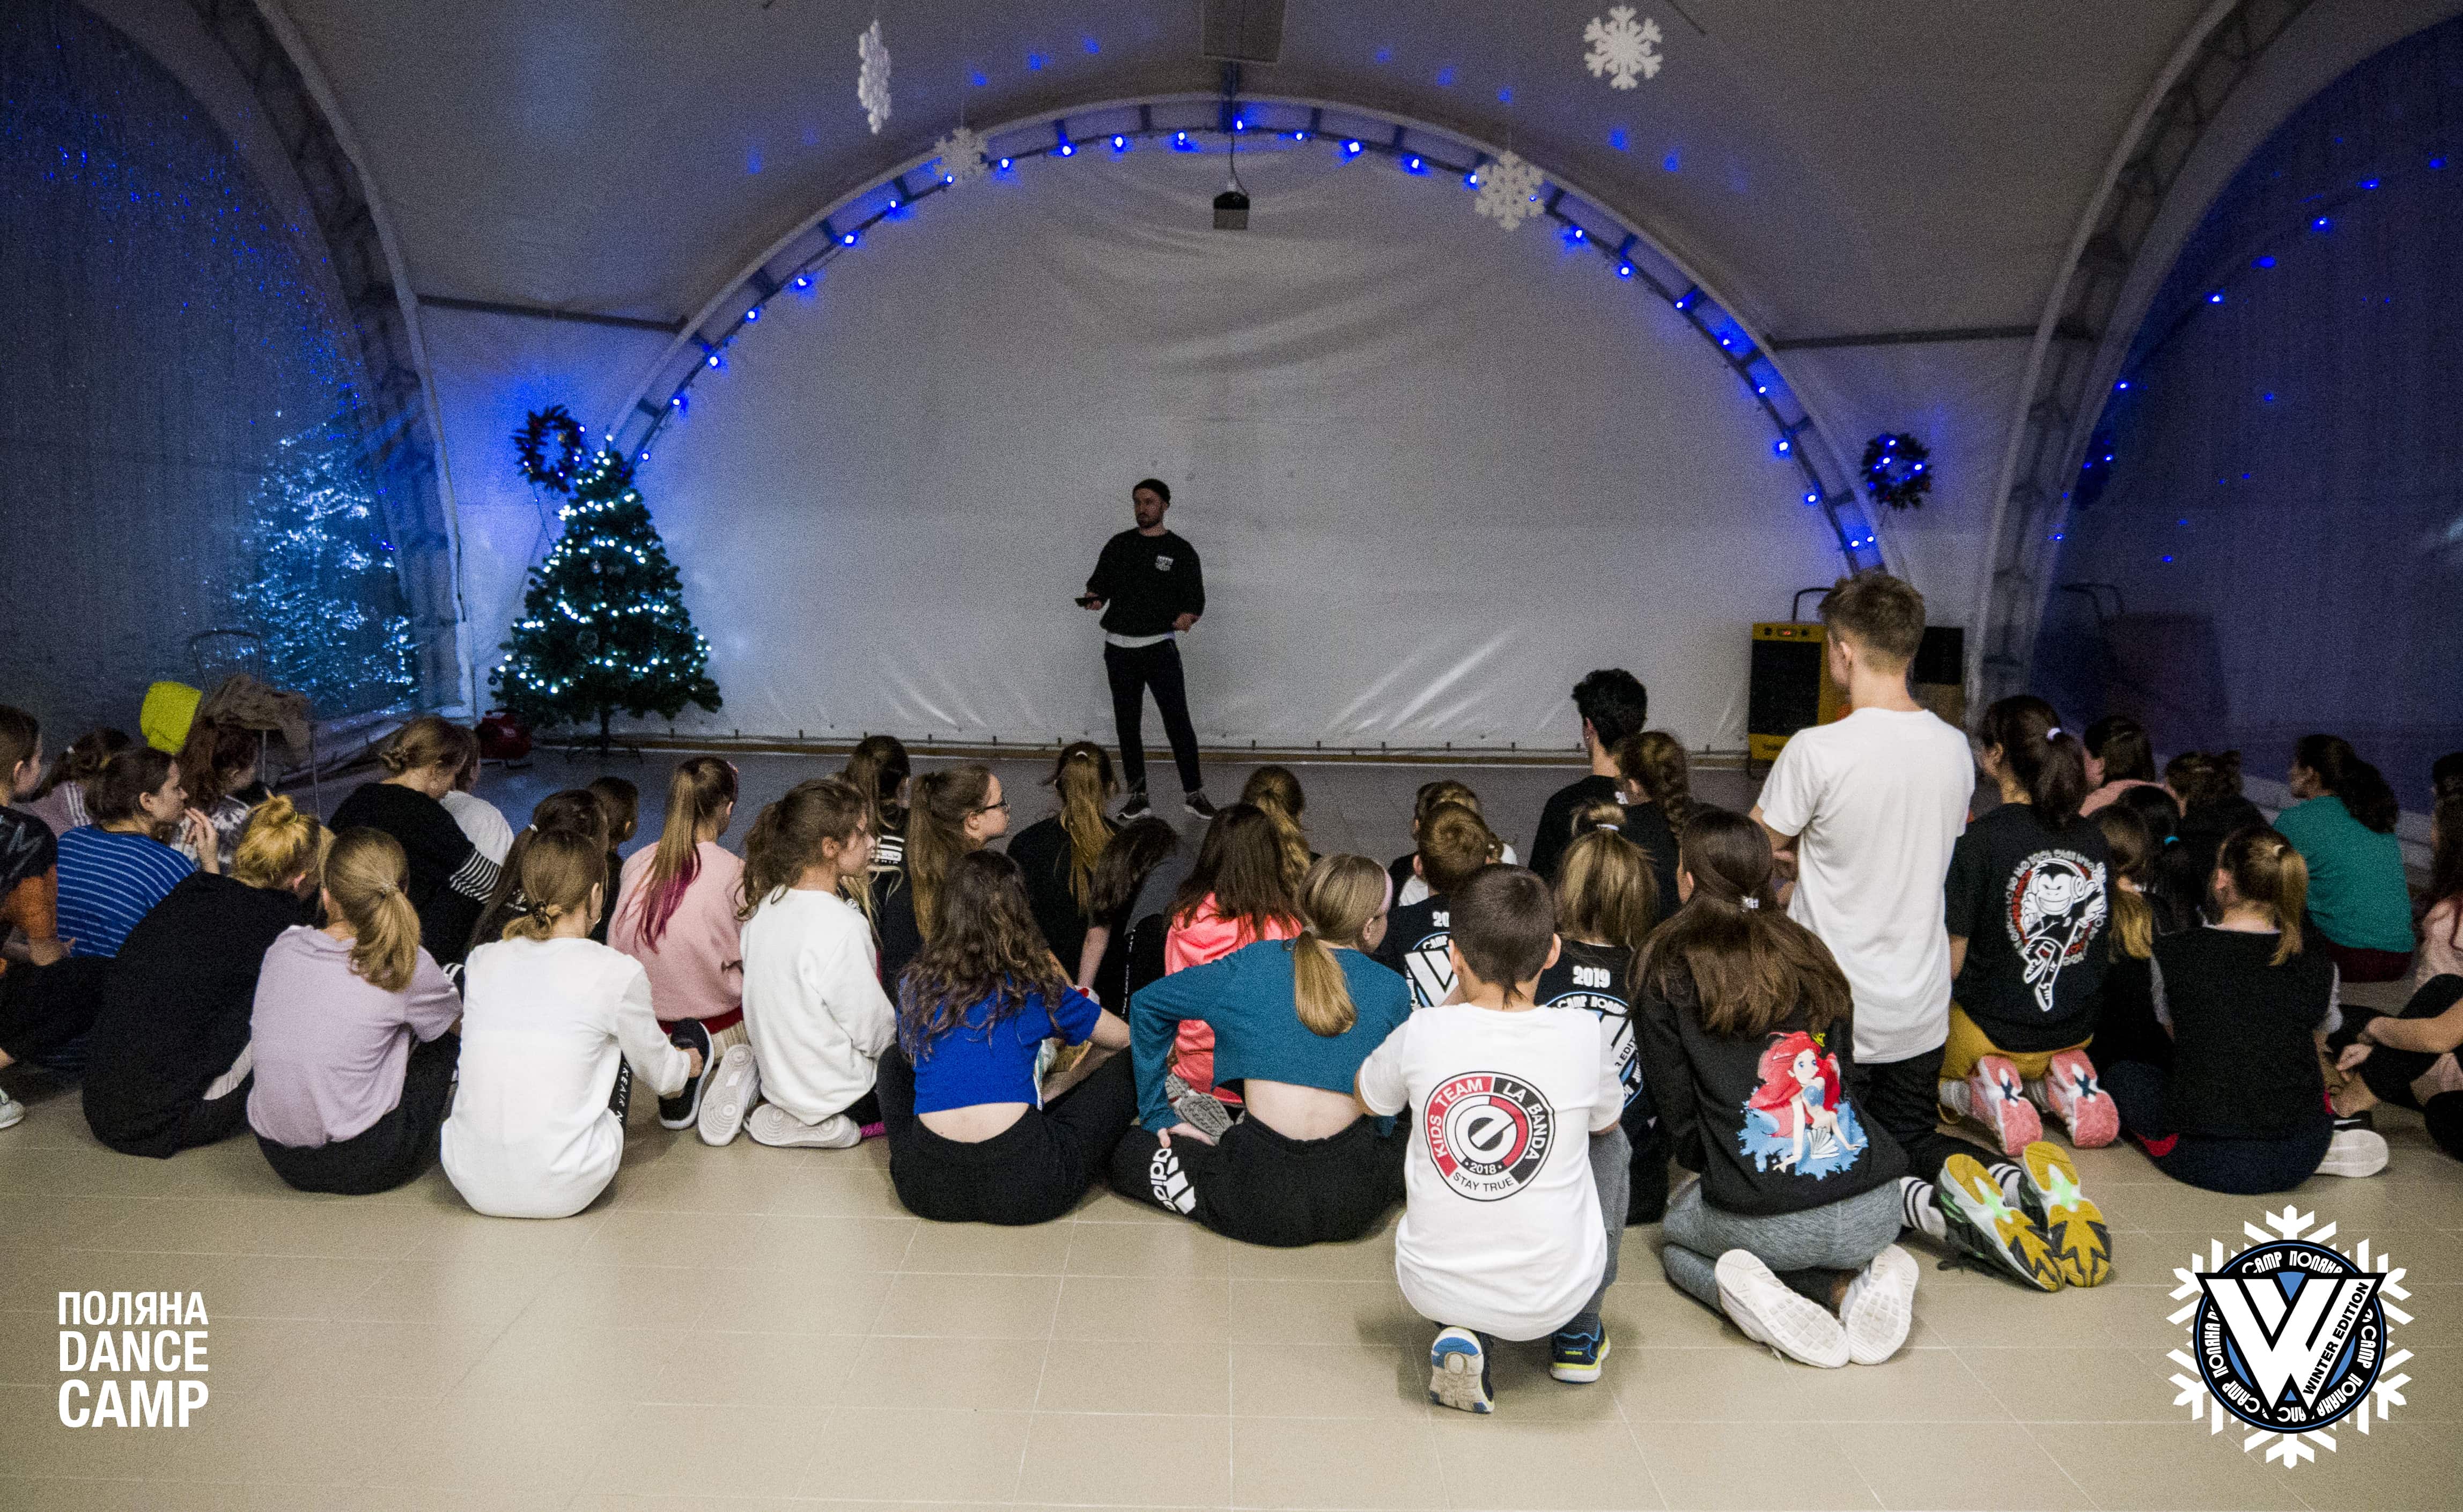 «Поляна Dance Camp» – творческий лагерь, Ленинградская обл., п. Шапки. Путевки в детский лагерь на 2023 год, фото 9